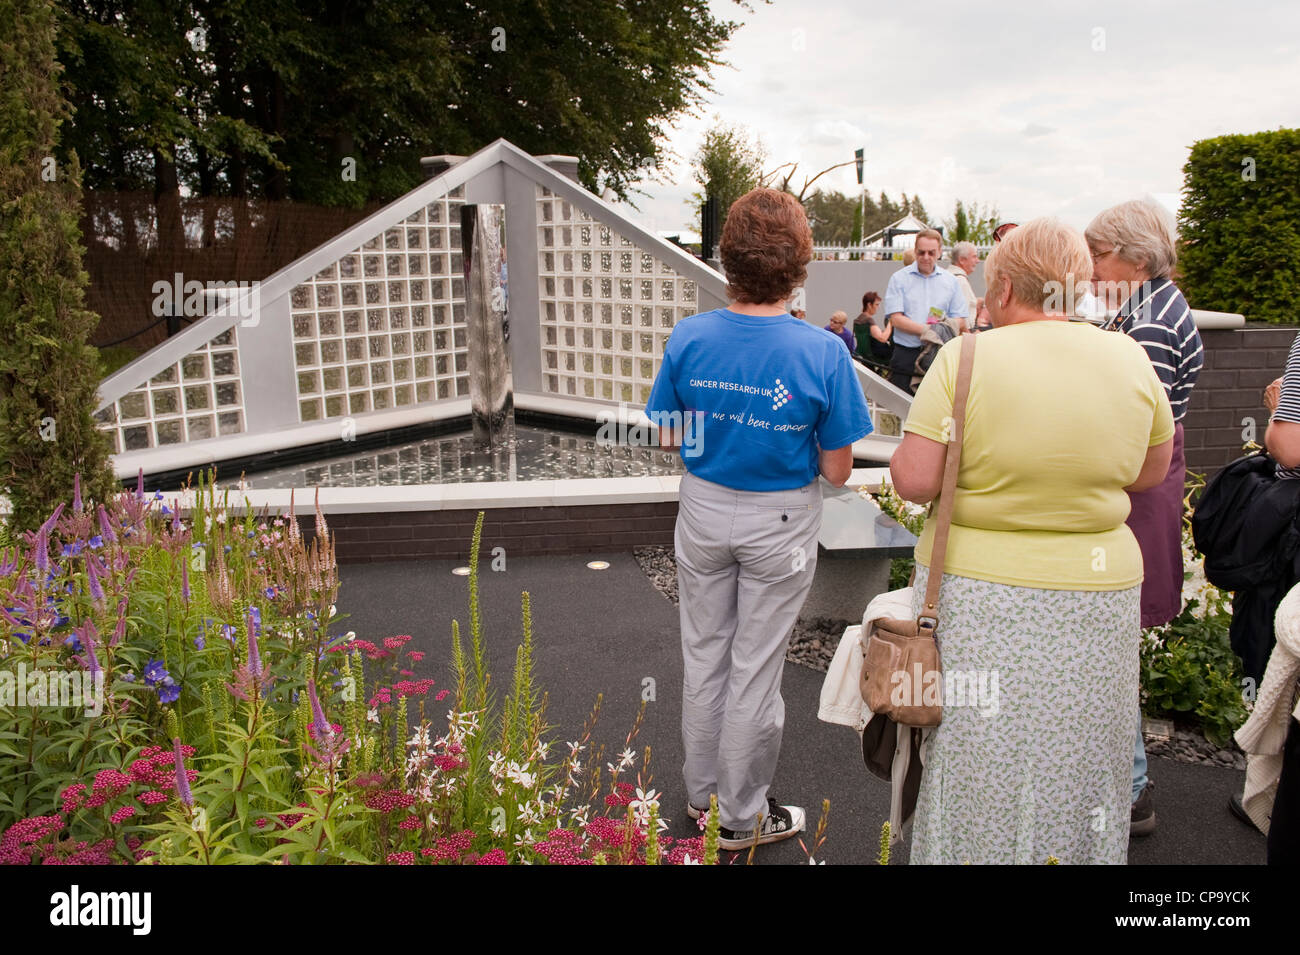 Persone in piedi con il lavoratore di volontariato, visualizzazione funzione acqua brillare in giardino per il Cancer Research UK - RHS Flower Show, Tatton Park, Cheshire, Inghilterra. Foto Stock